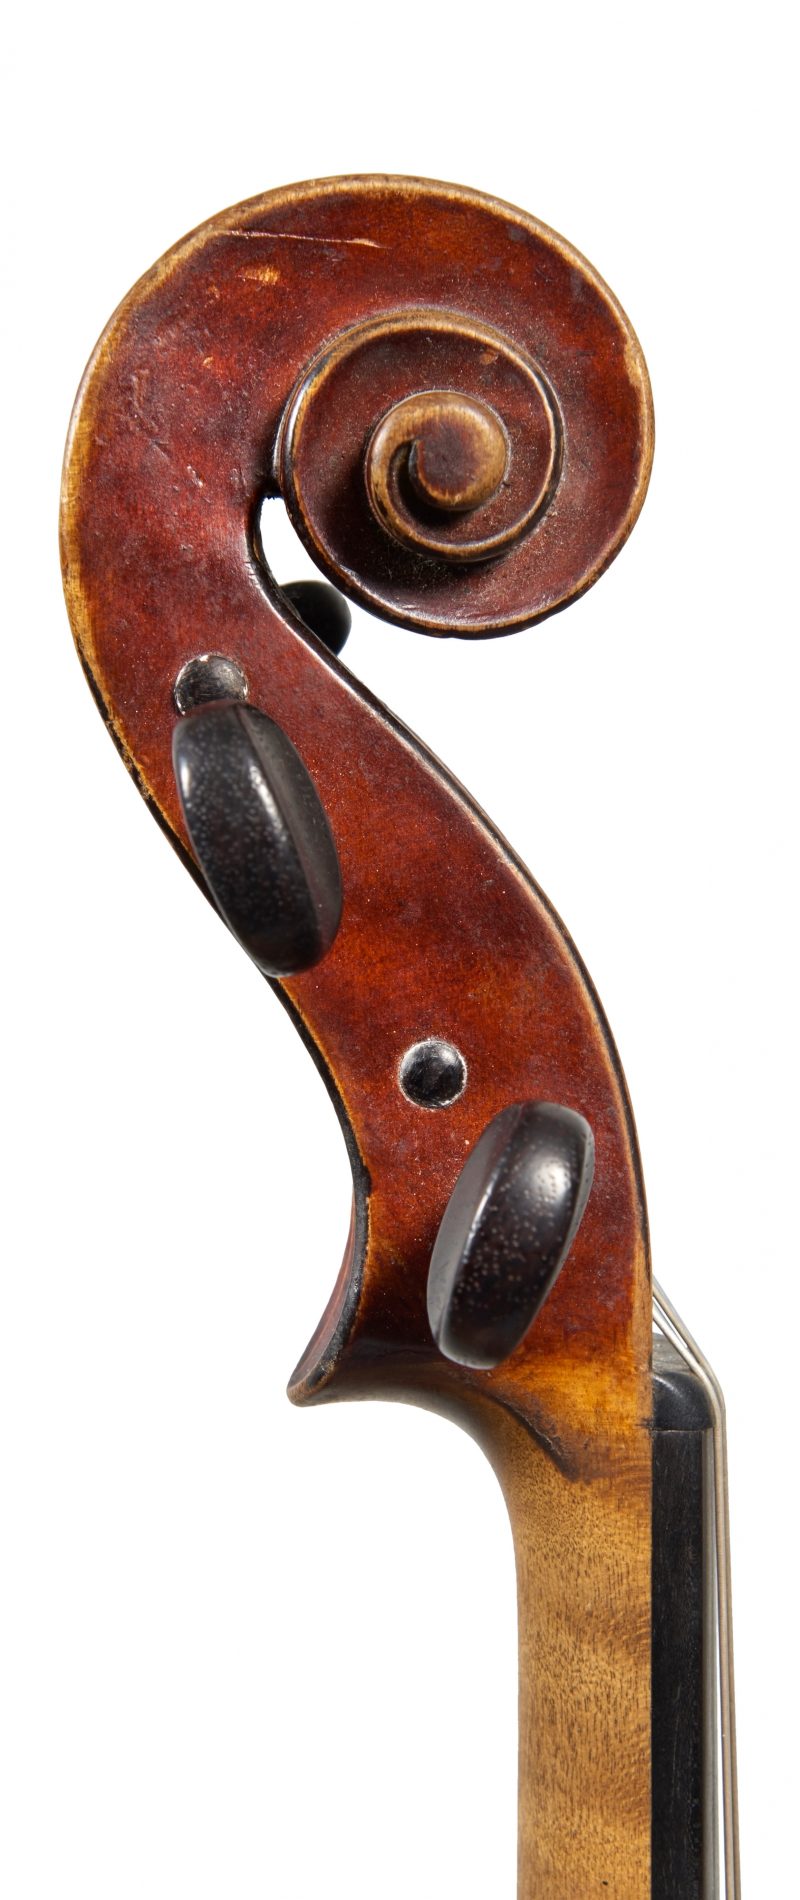 discolor efterspørgsel omdømme A violin by Emil Hjorth & Sønner | Four Centuries Gallery | Ingles & Hayday